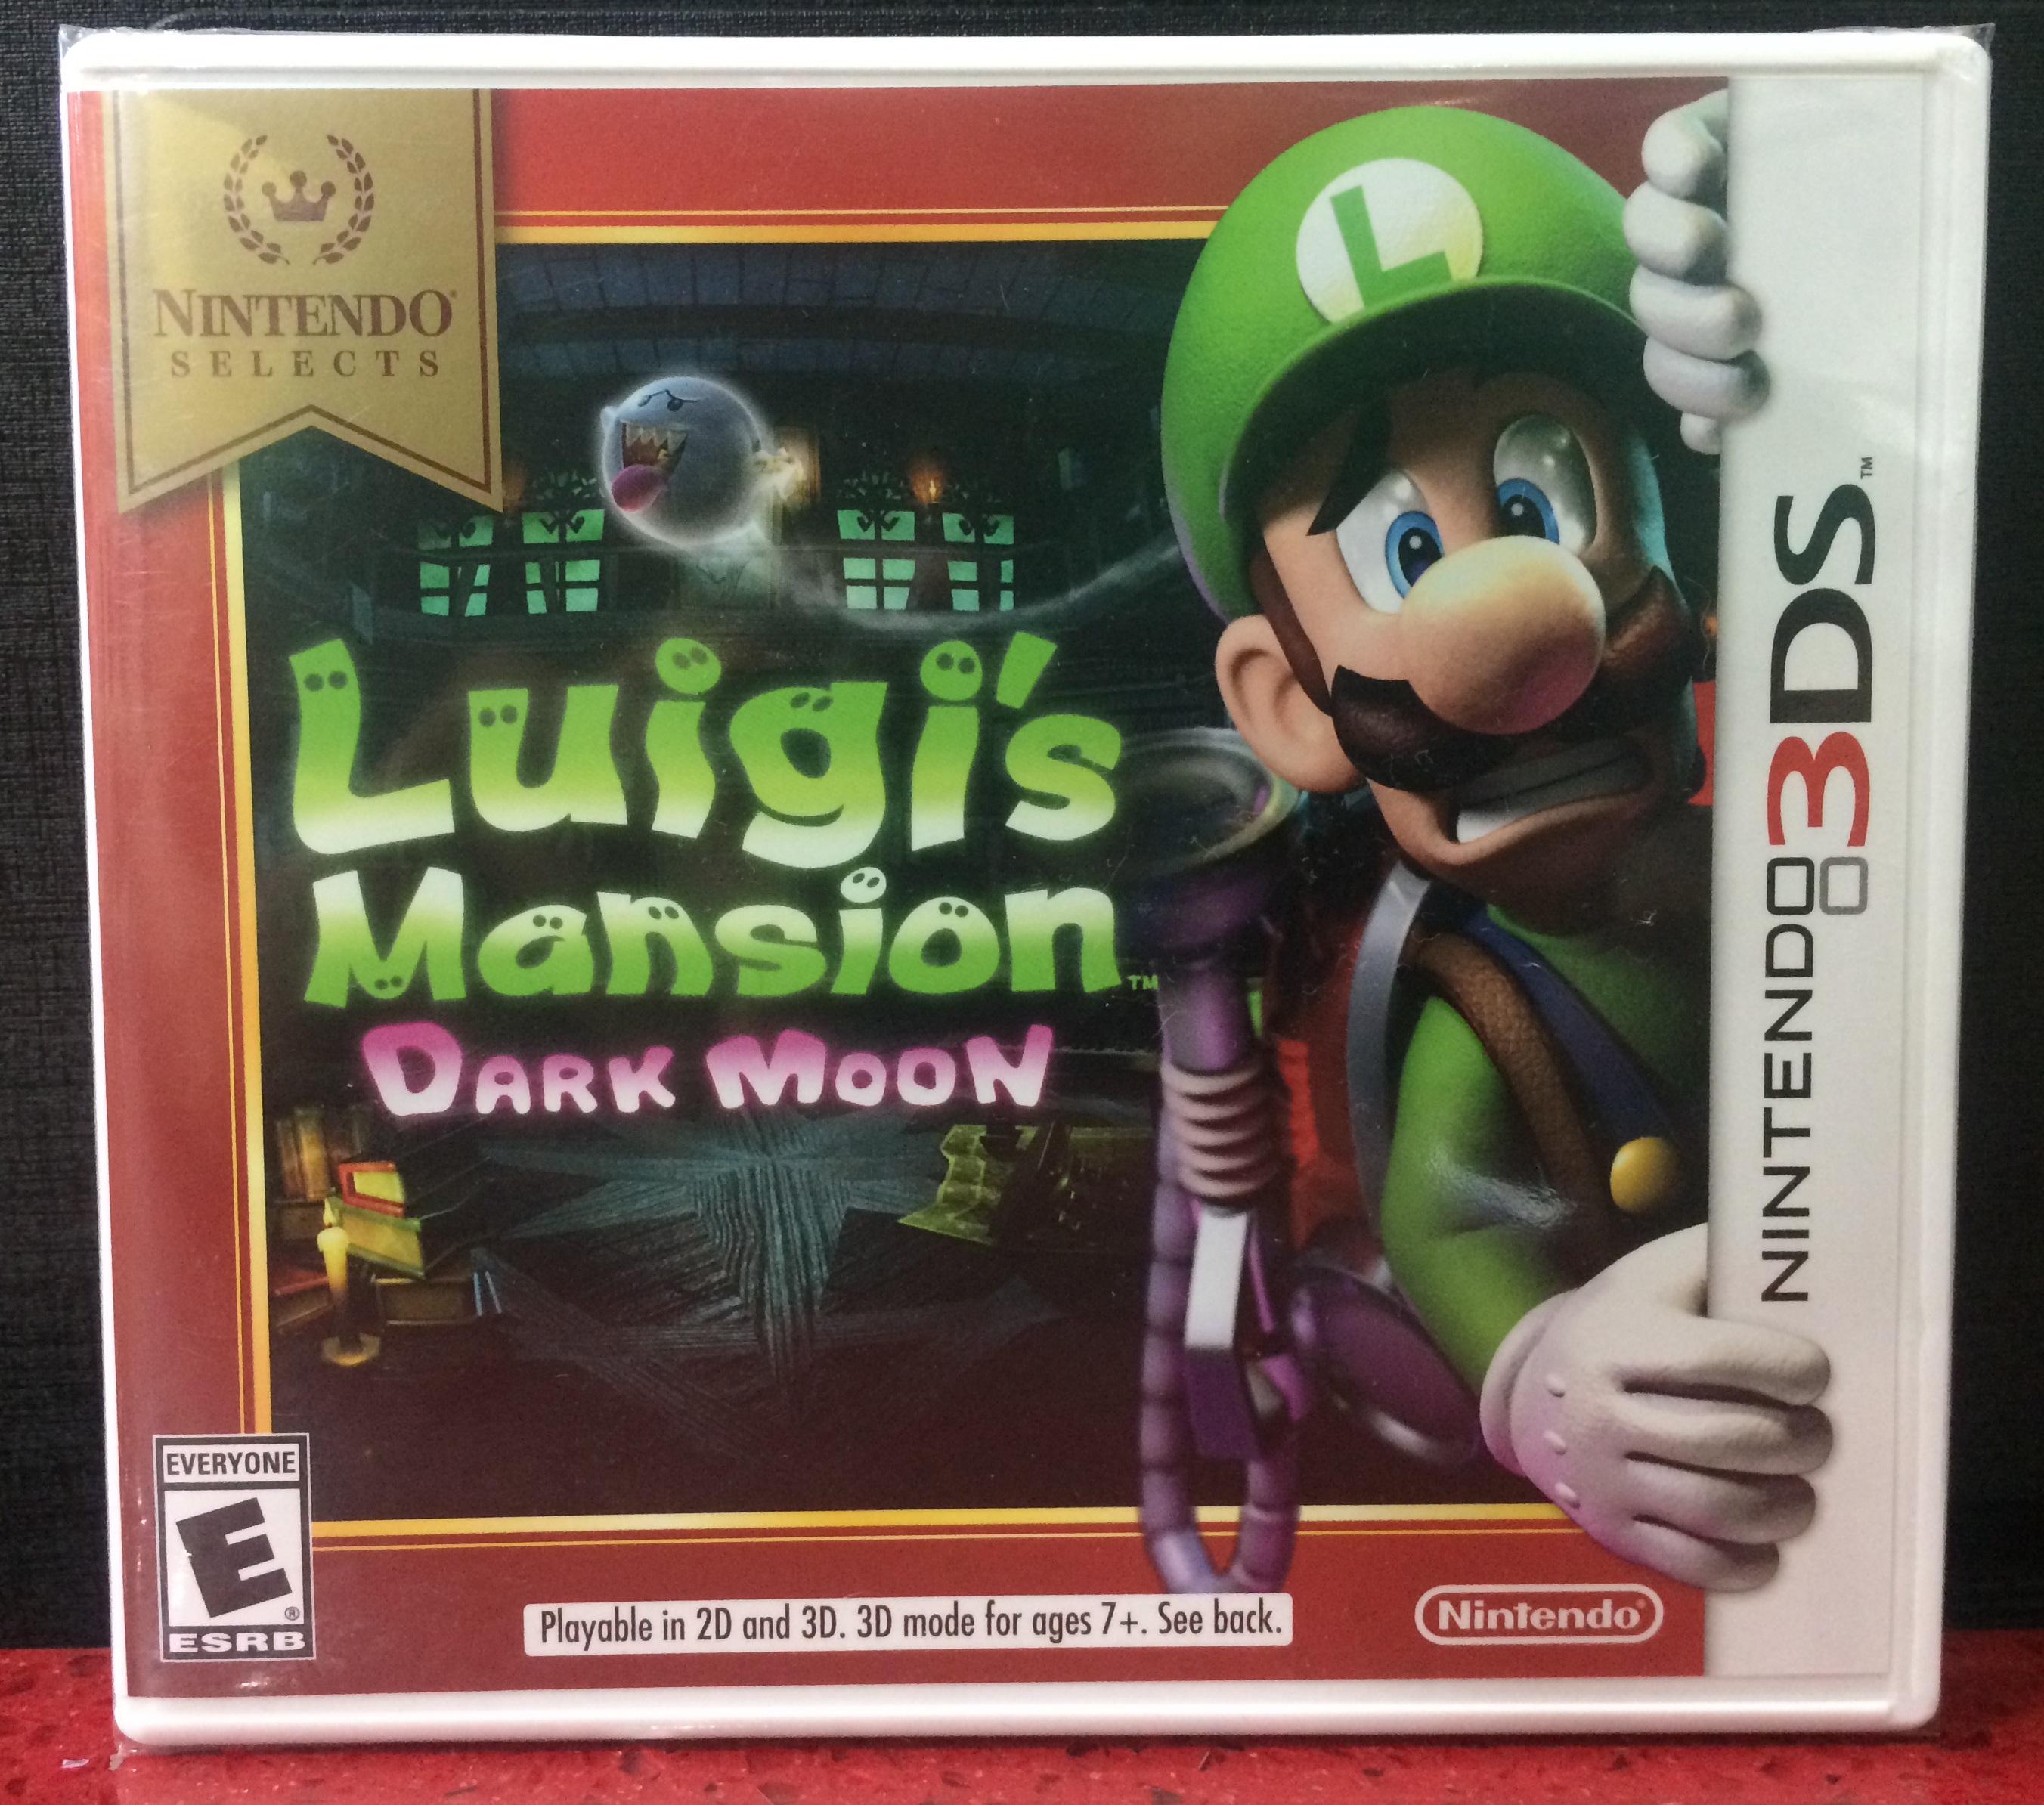 download luigis mansion dark moon 3ds for free